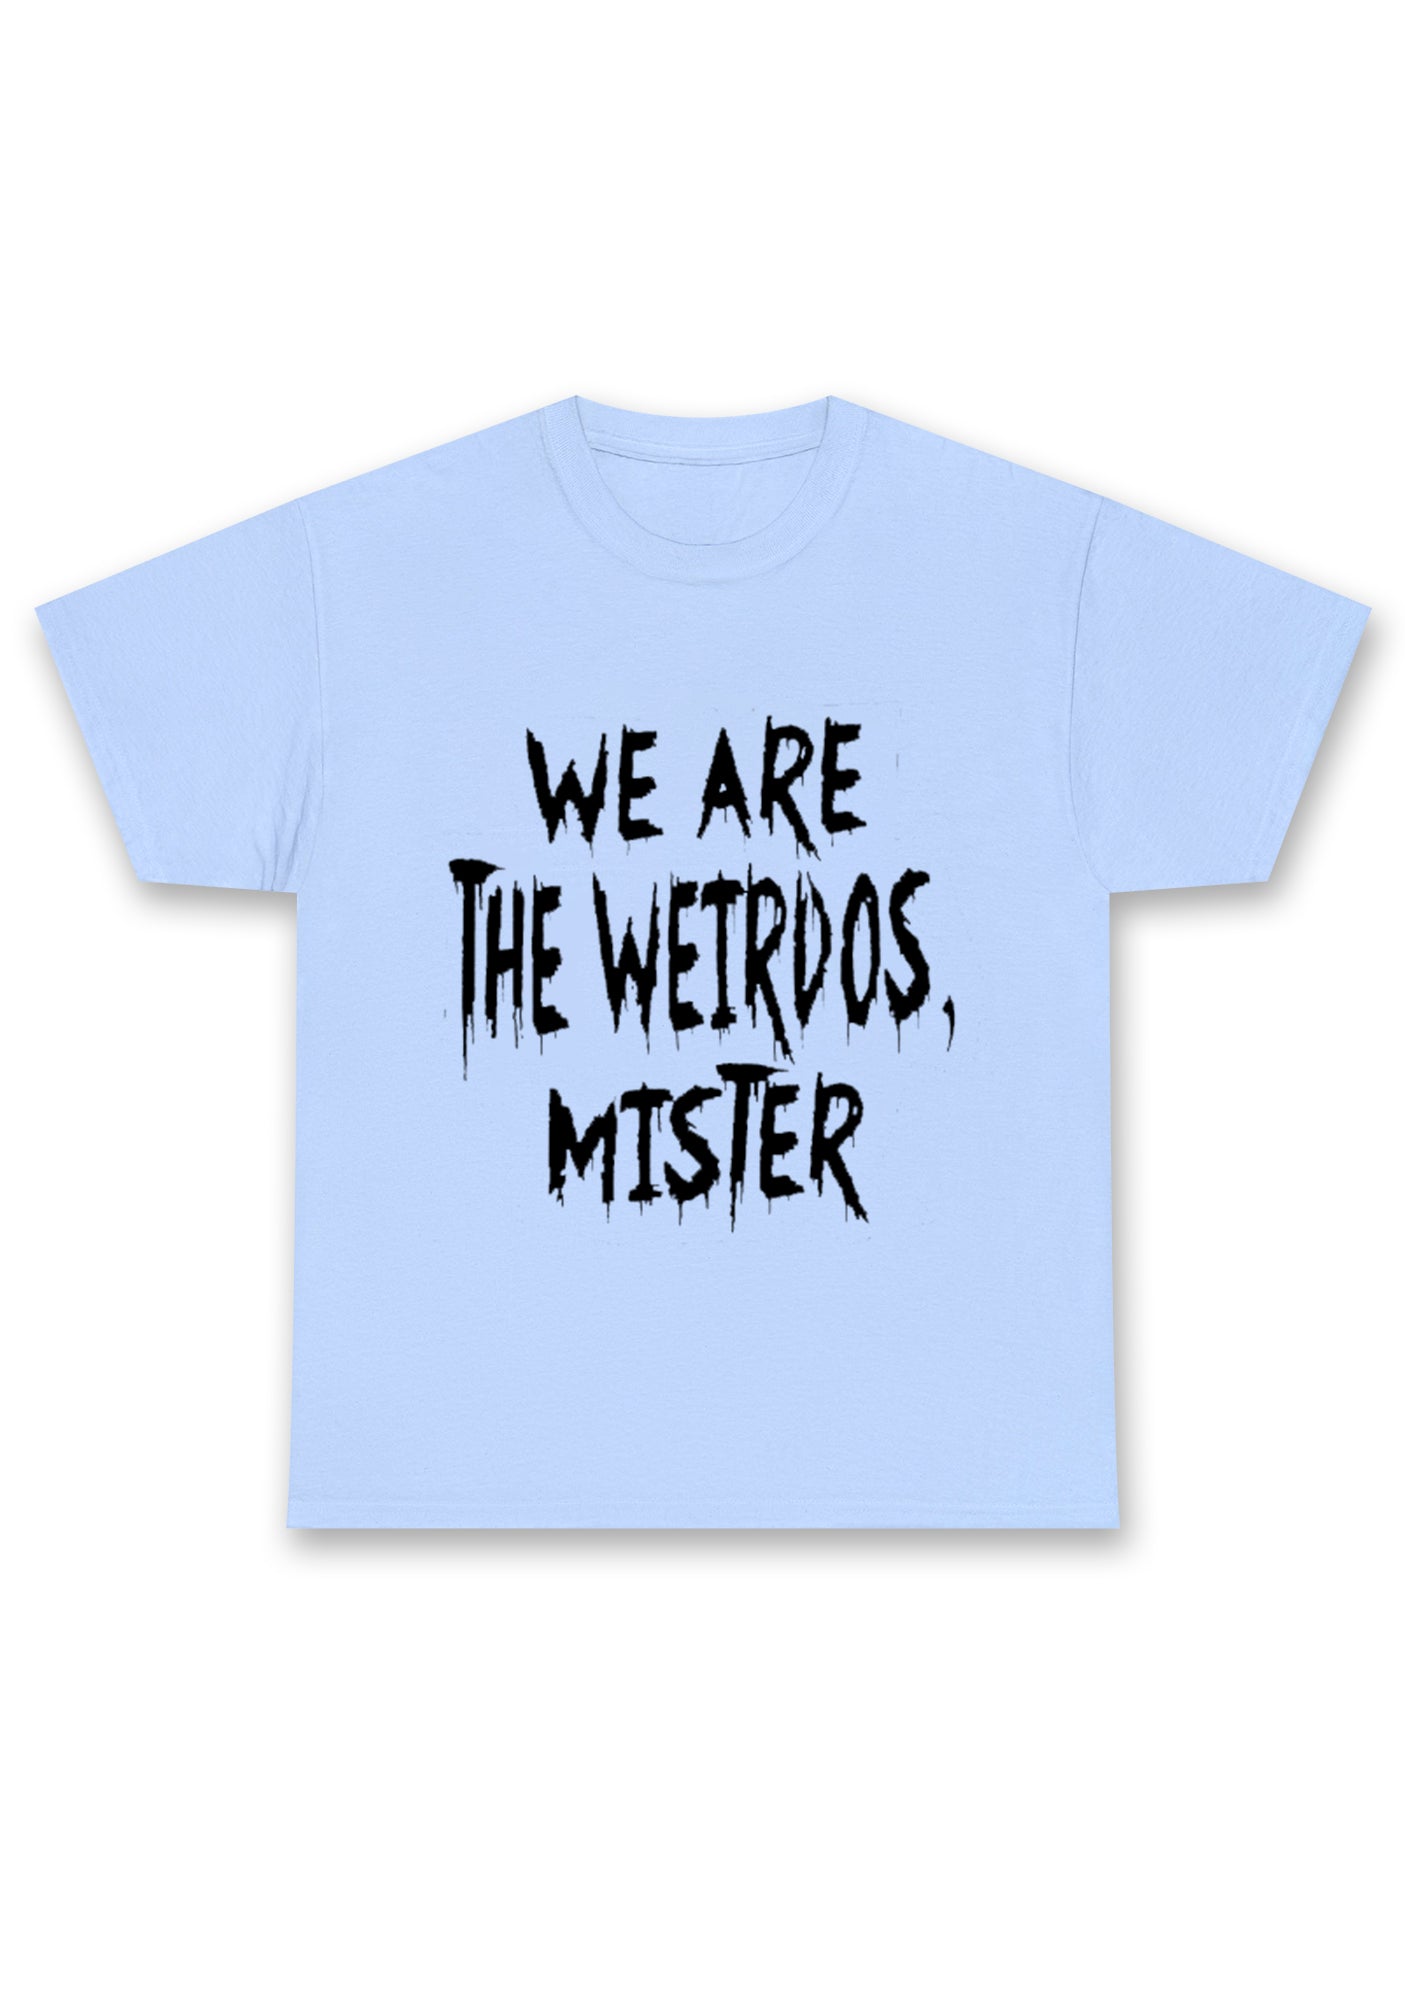 We Are The Weirdos Mister Chunky Shirt